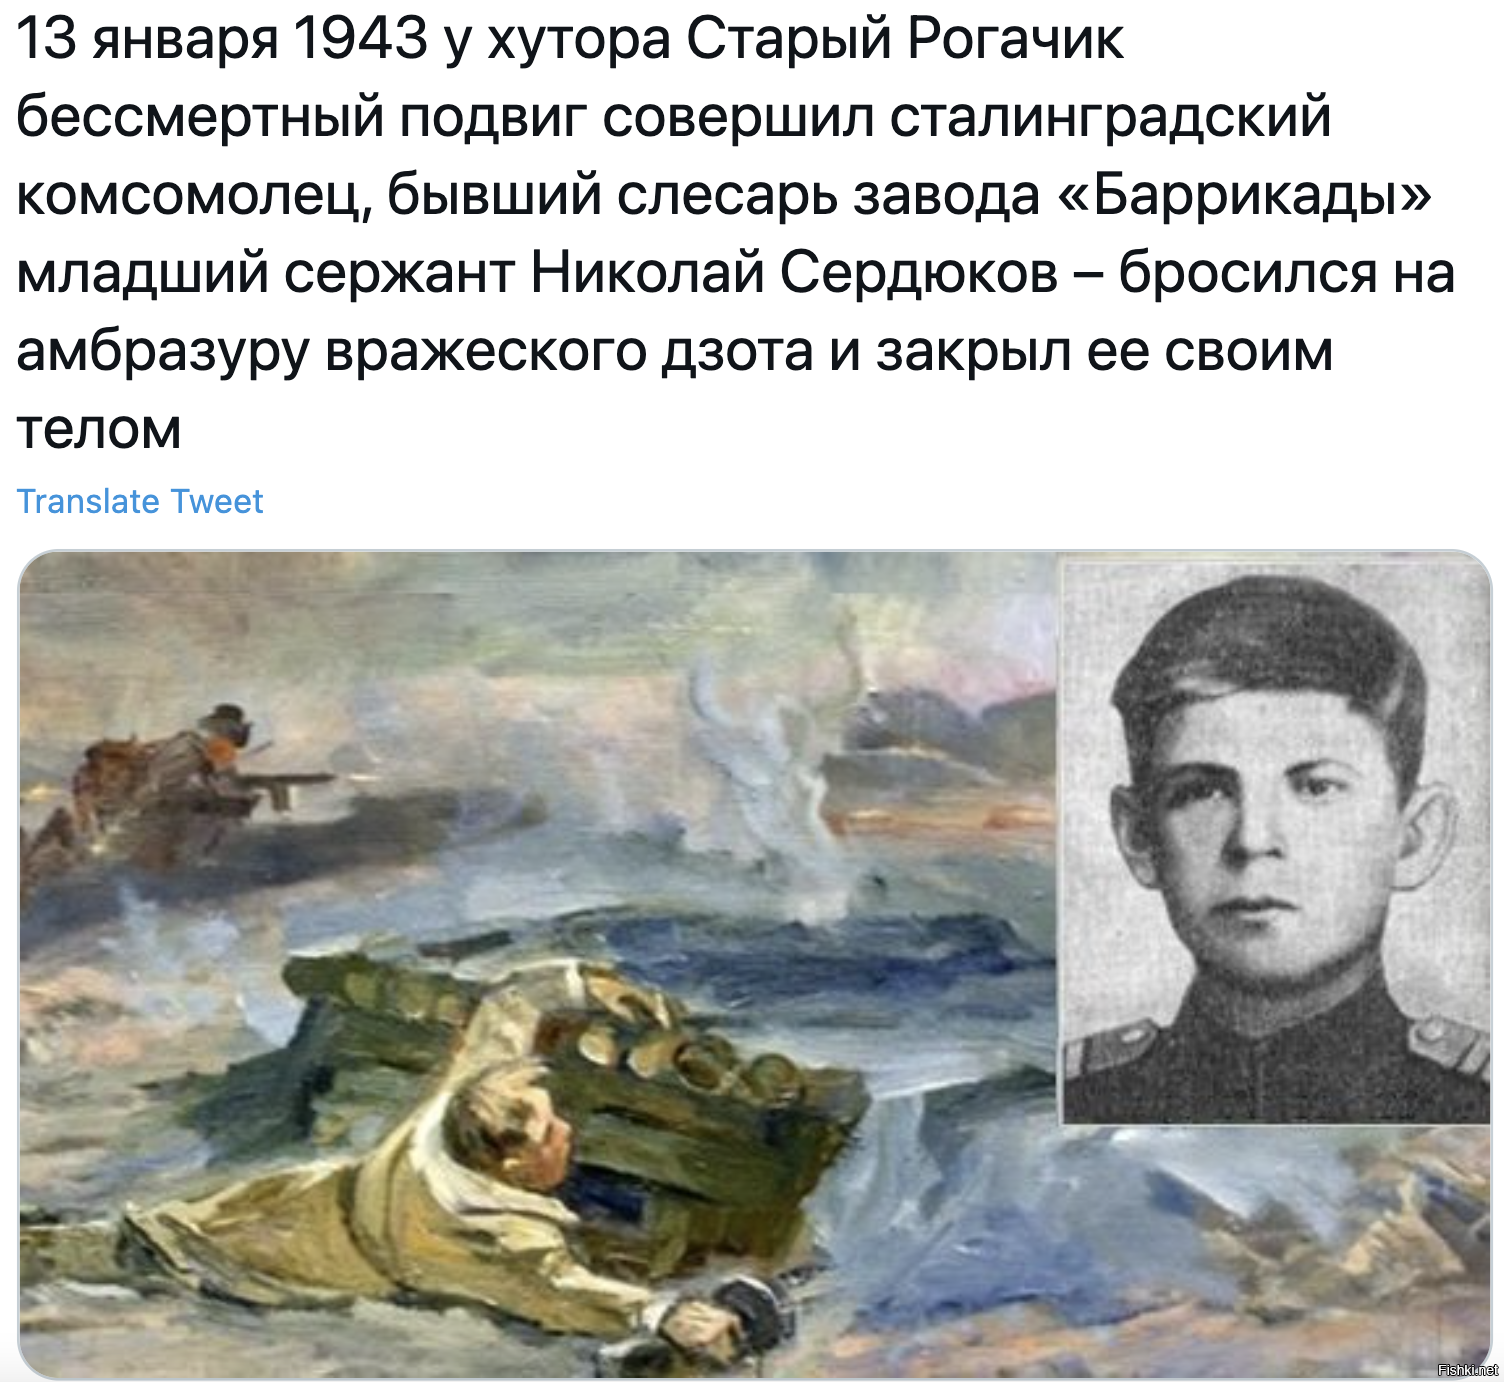 После подвига совершенного. Подвиг Николая Сердюкова в Сталинградской битве.